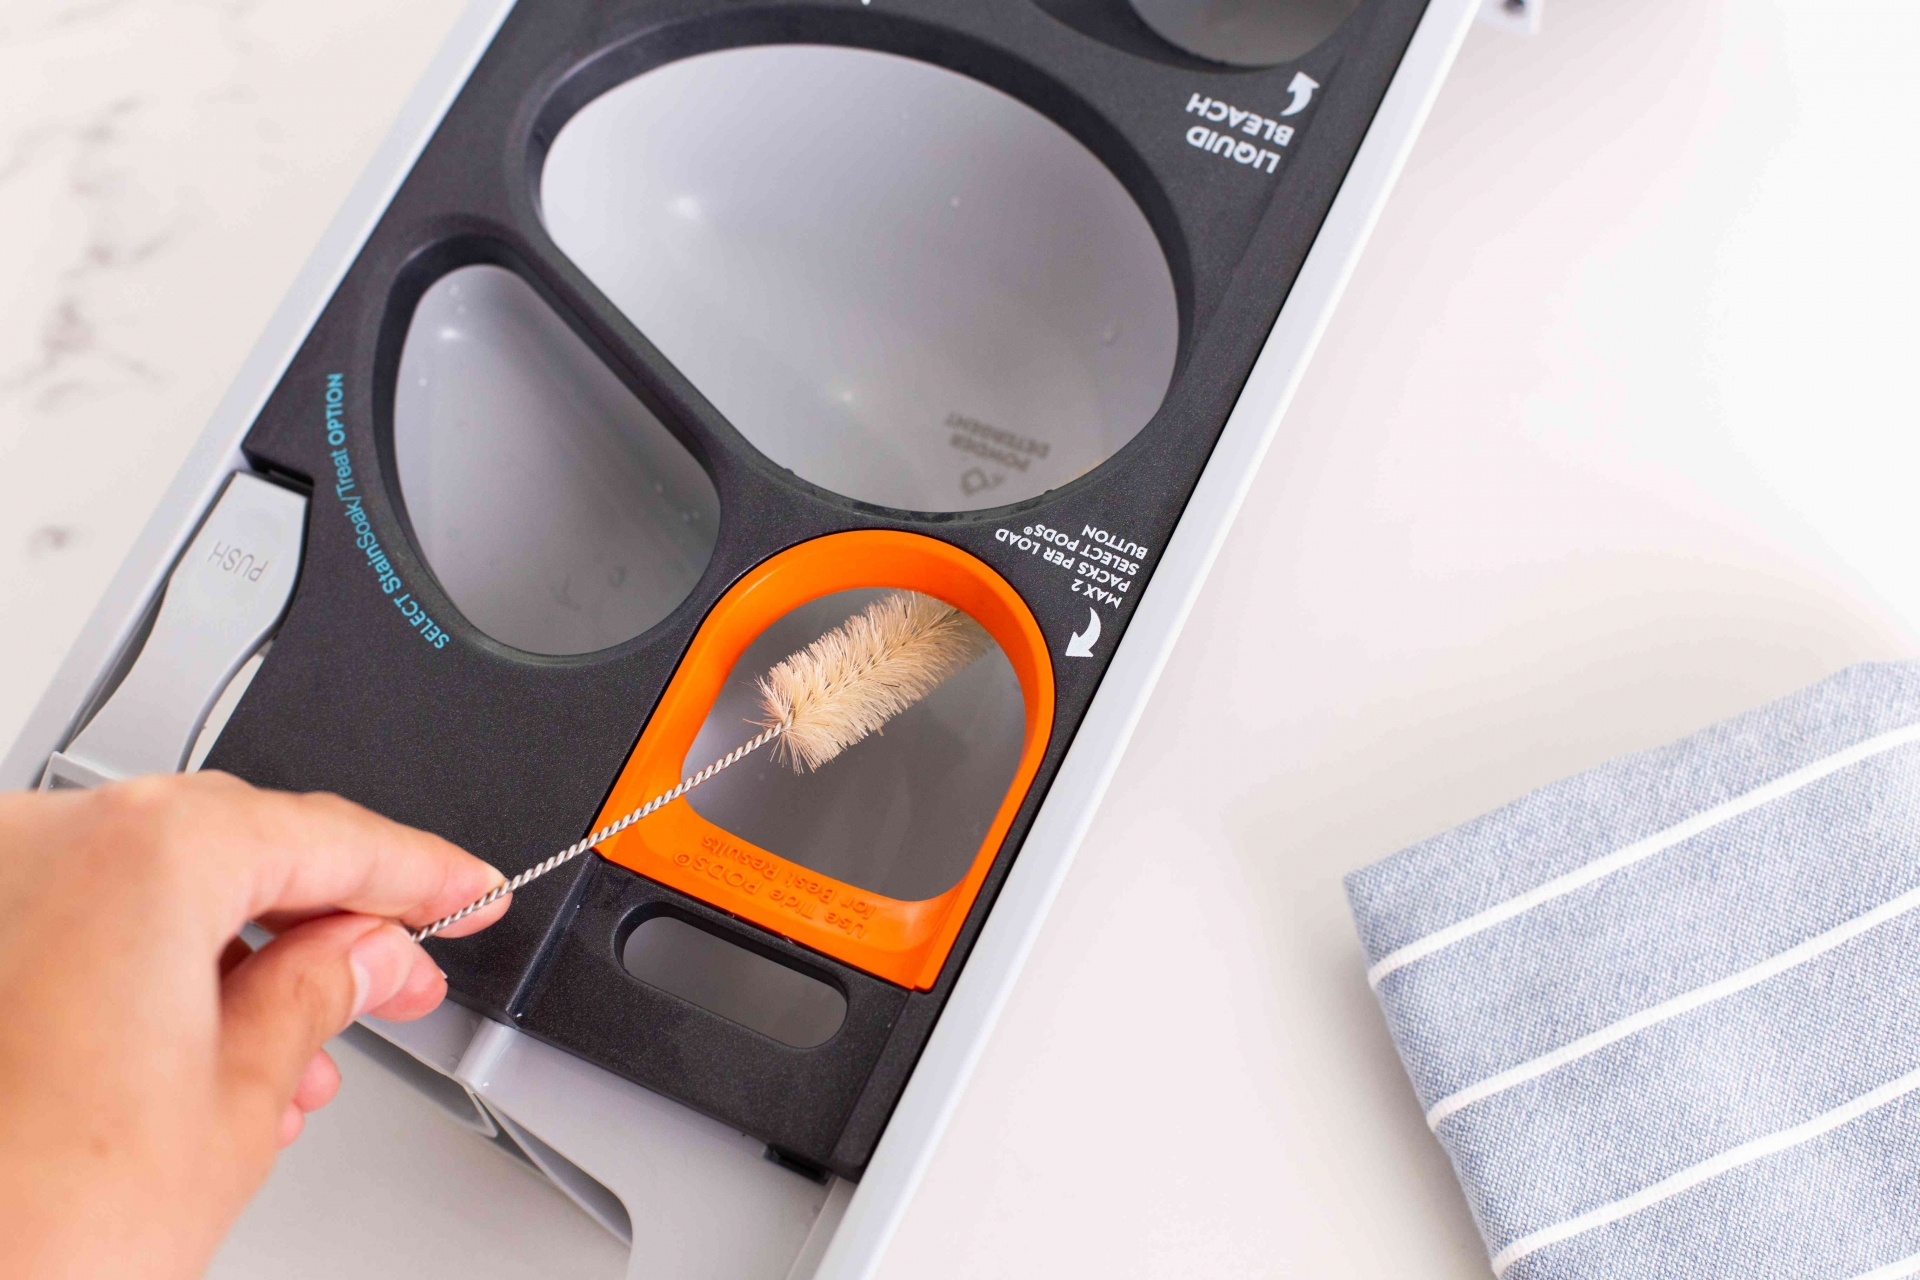 Sử dụng một bàn chải mềm nhỏ để làm sạch phần mở ngăn kéo trên máy giặt. Loại bỏ tất cả cặn bám ở phần trên và phần dưới của hốc.